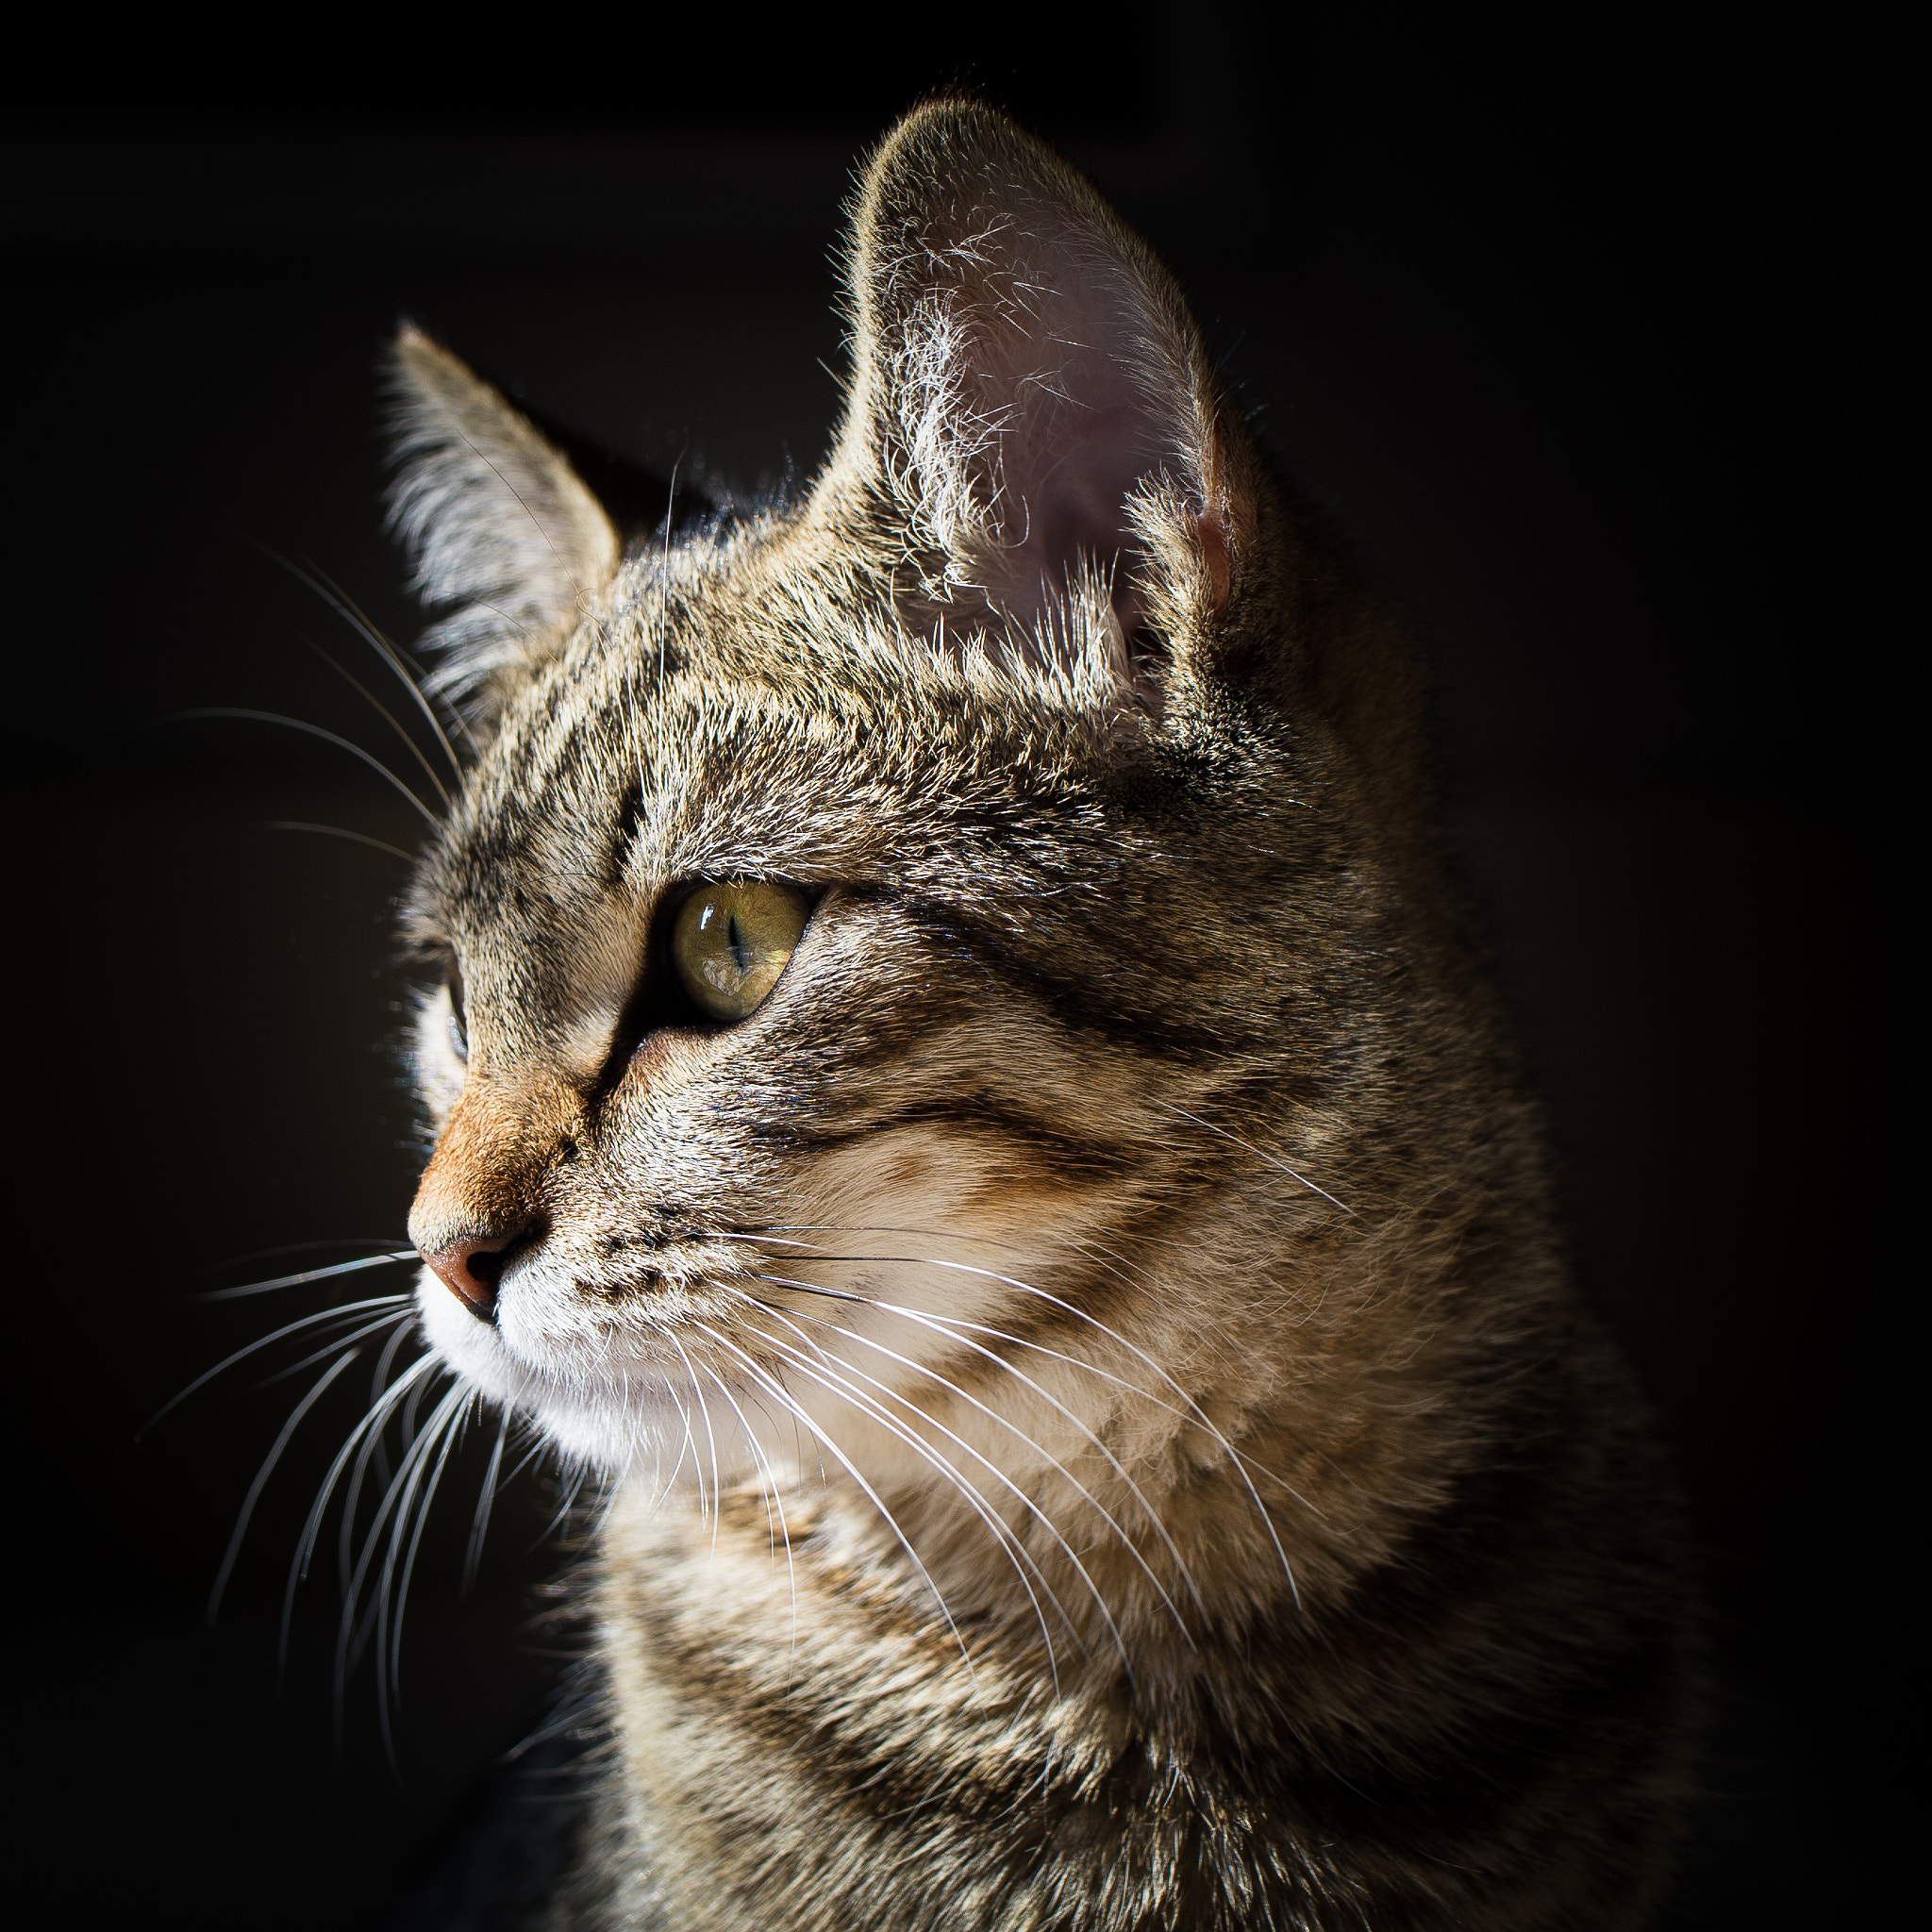 Nikon Df sample photo. Cat portrait photography